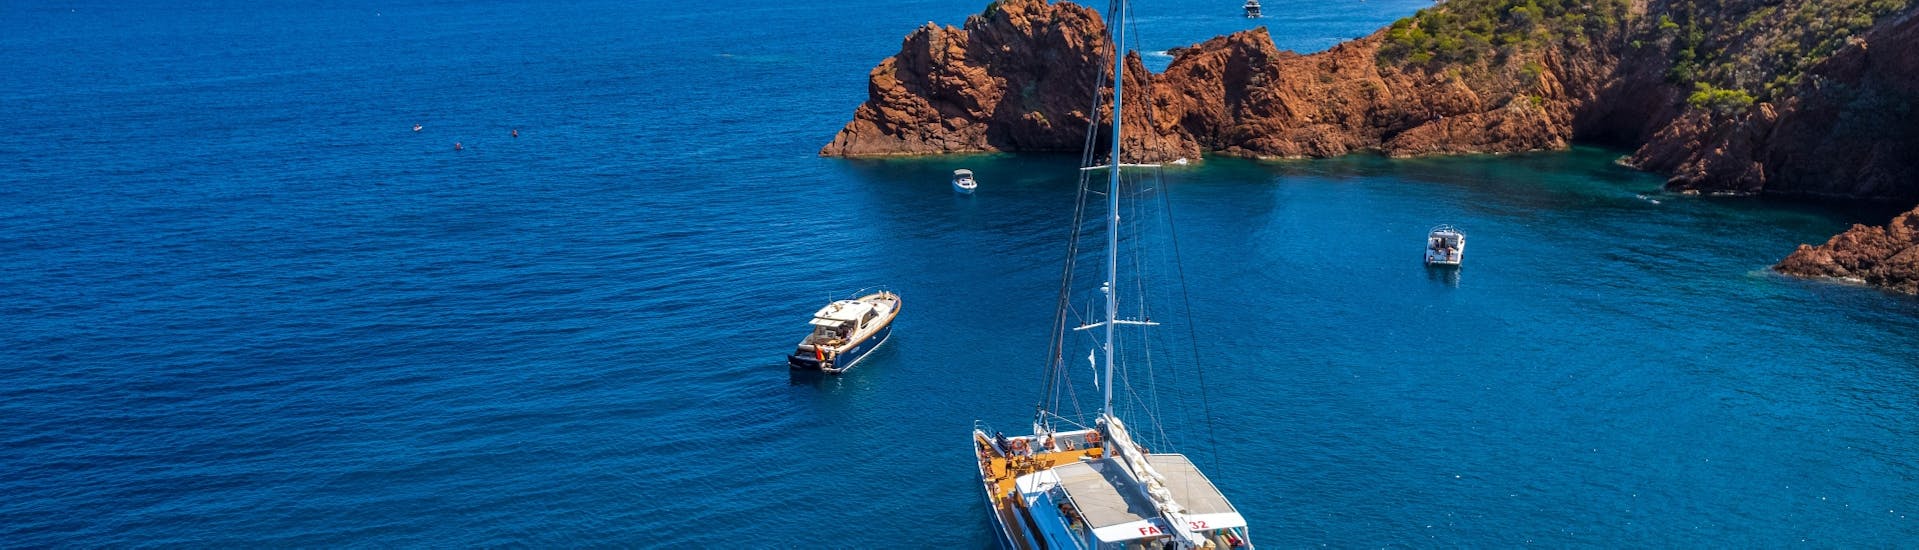 Foto van een catamaran in de Franse Rivièra tijdens een catamarantocht naar de Lerins eilanden vanuit Cannes door Riviera Lines.